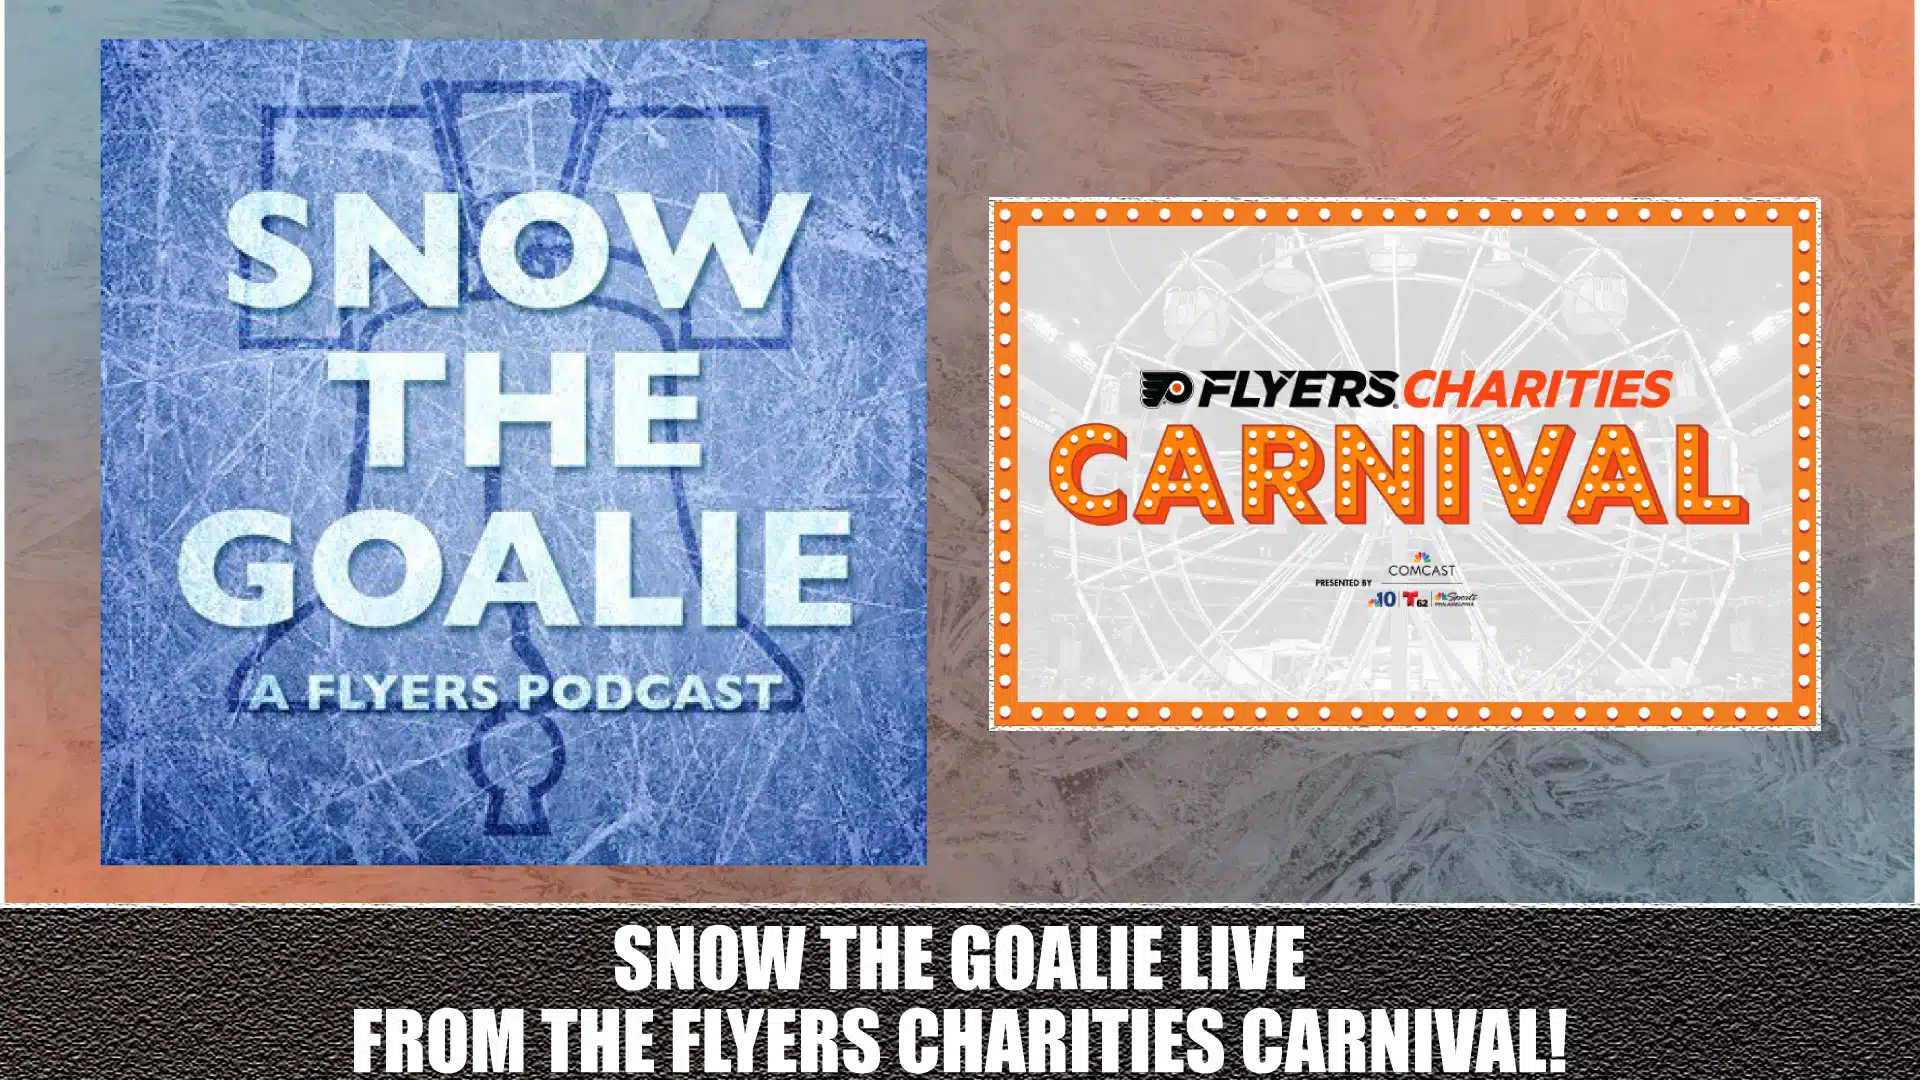 Snow The Goalie a Flyers Podcast